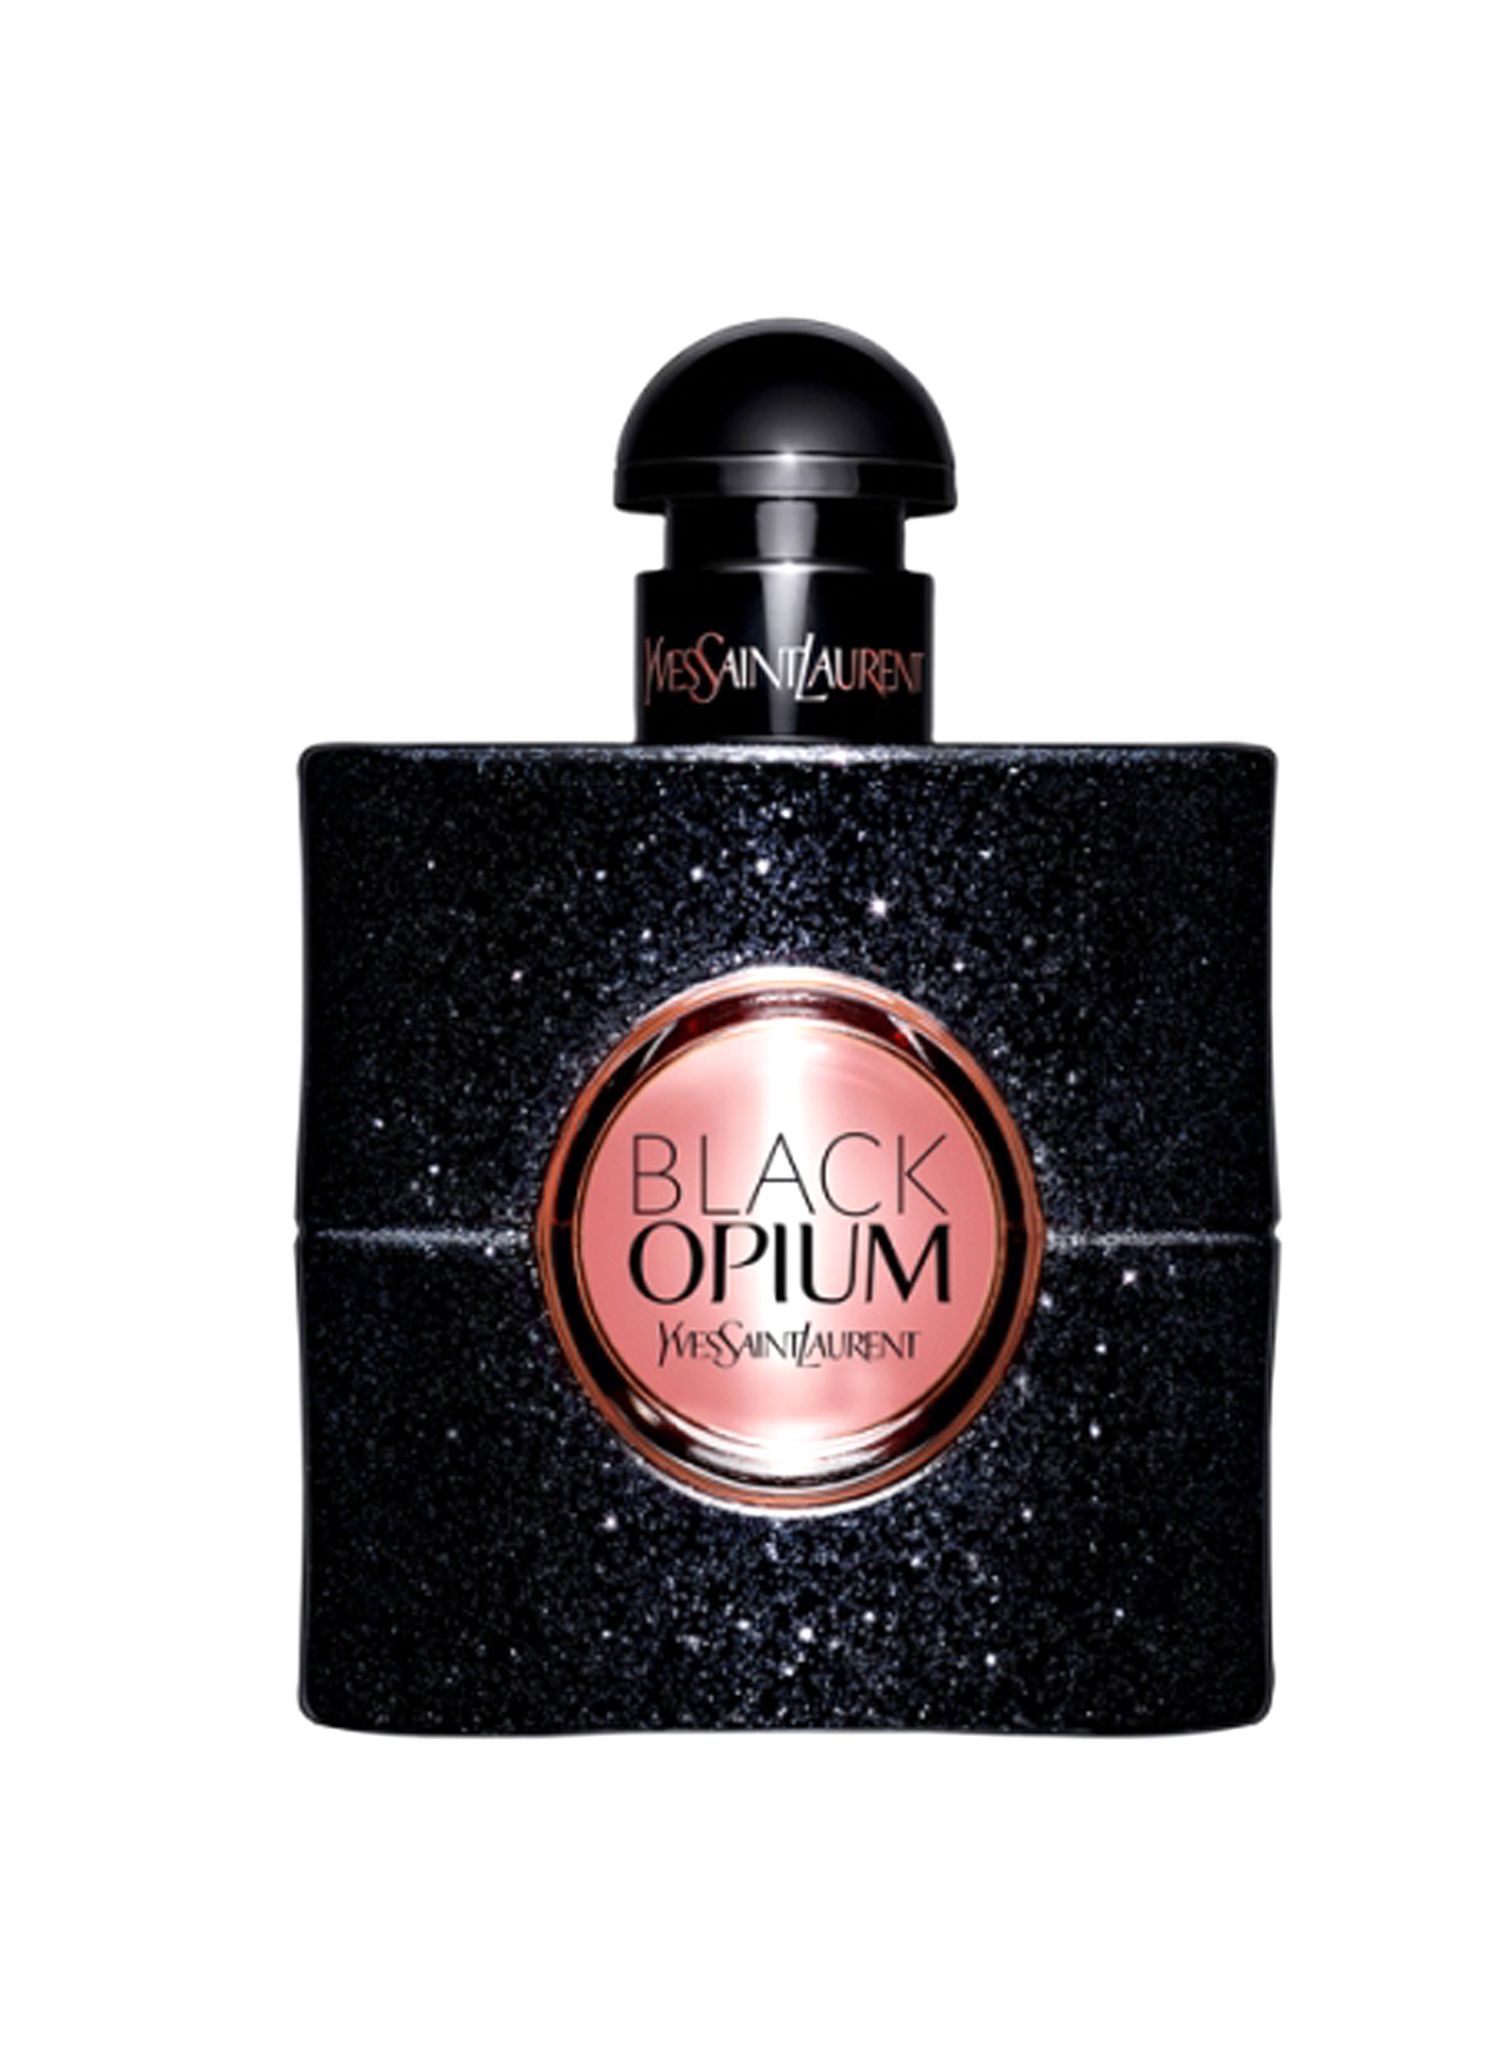 Yves Saint Laurent – Black Opium Eau de Parfum 50 ml à 74,25 € au lieu de 99 € chez Place des Tendances 